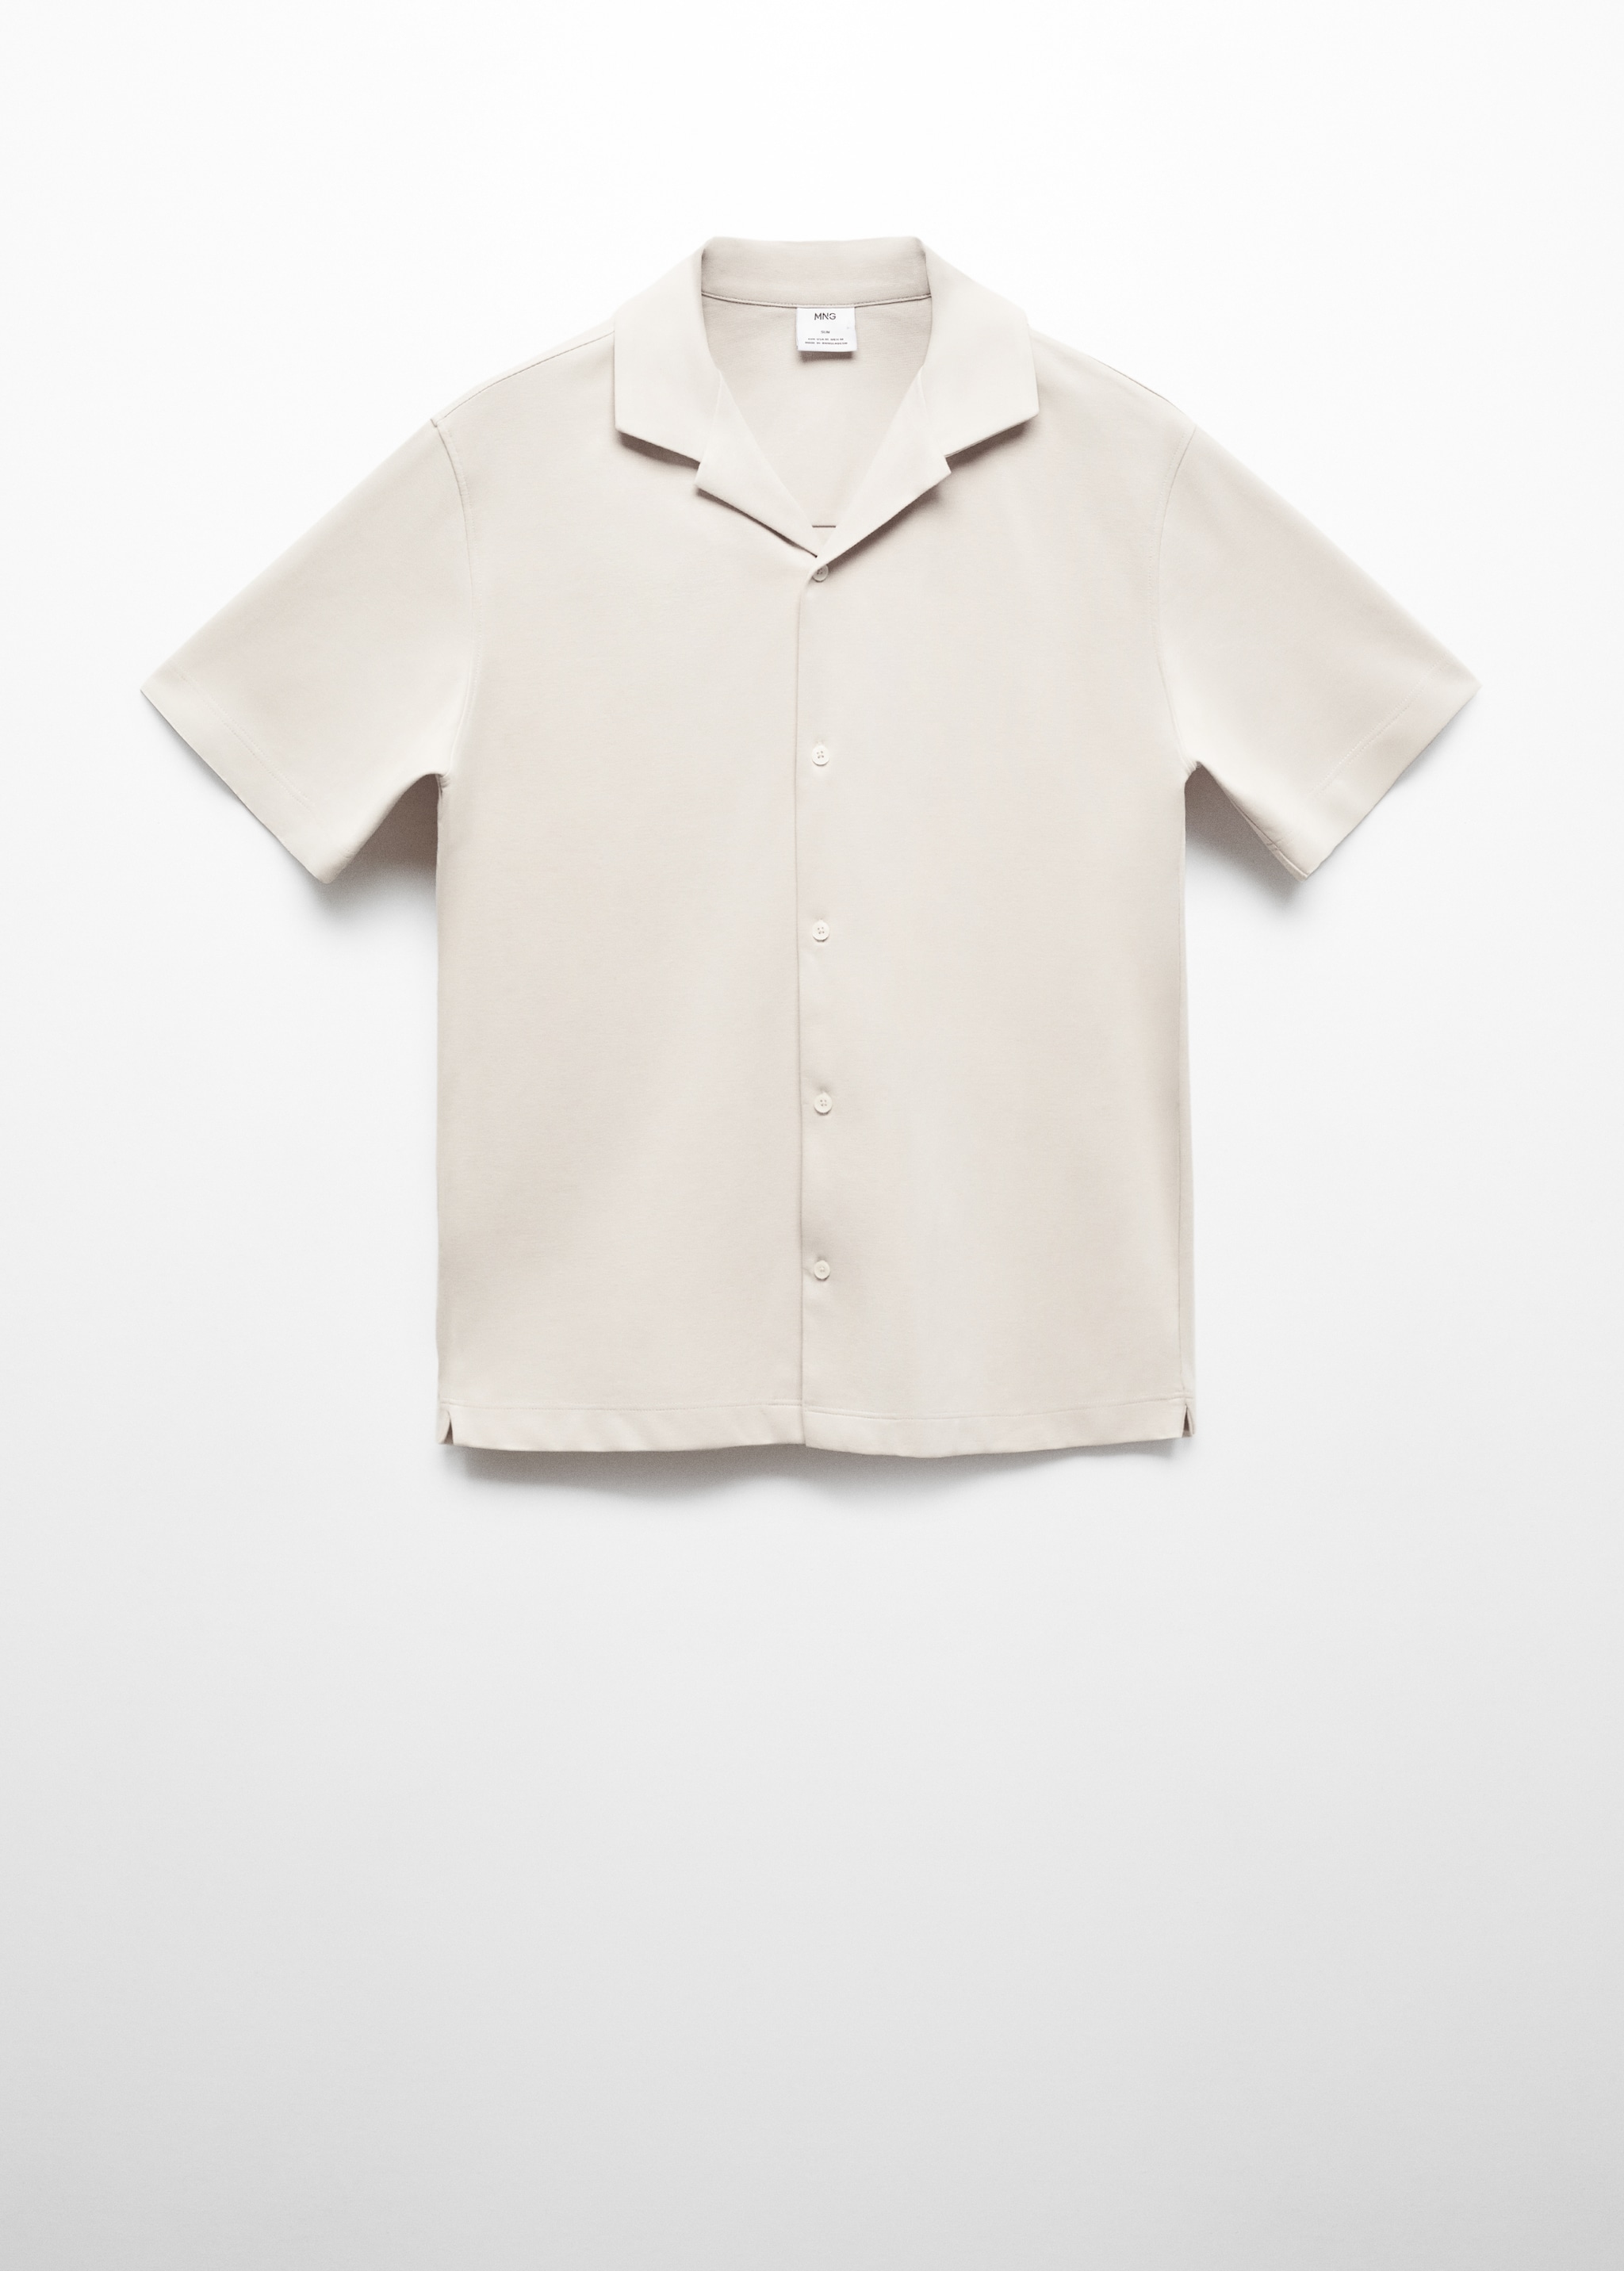 Camisa algodão manga curta - Artigo sem modelo